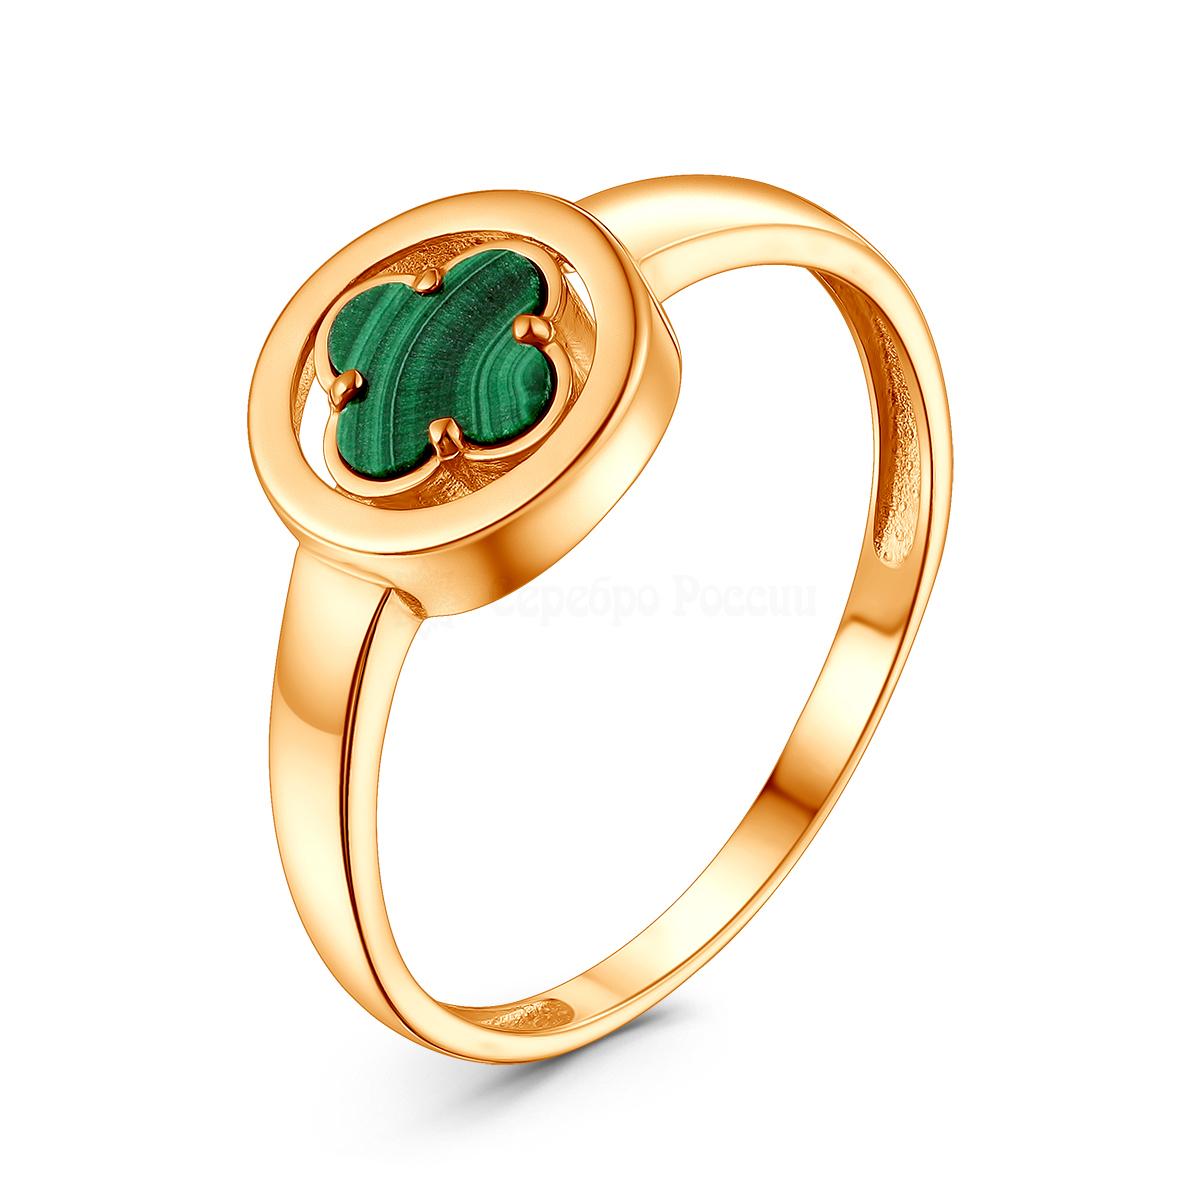 Кольцо из золочёного серебра с зелёным малахитом в форме клевера 05-201-0407-46 05-201-0407-46